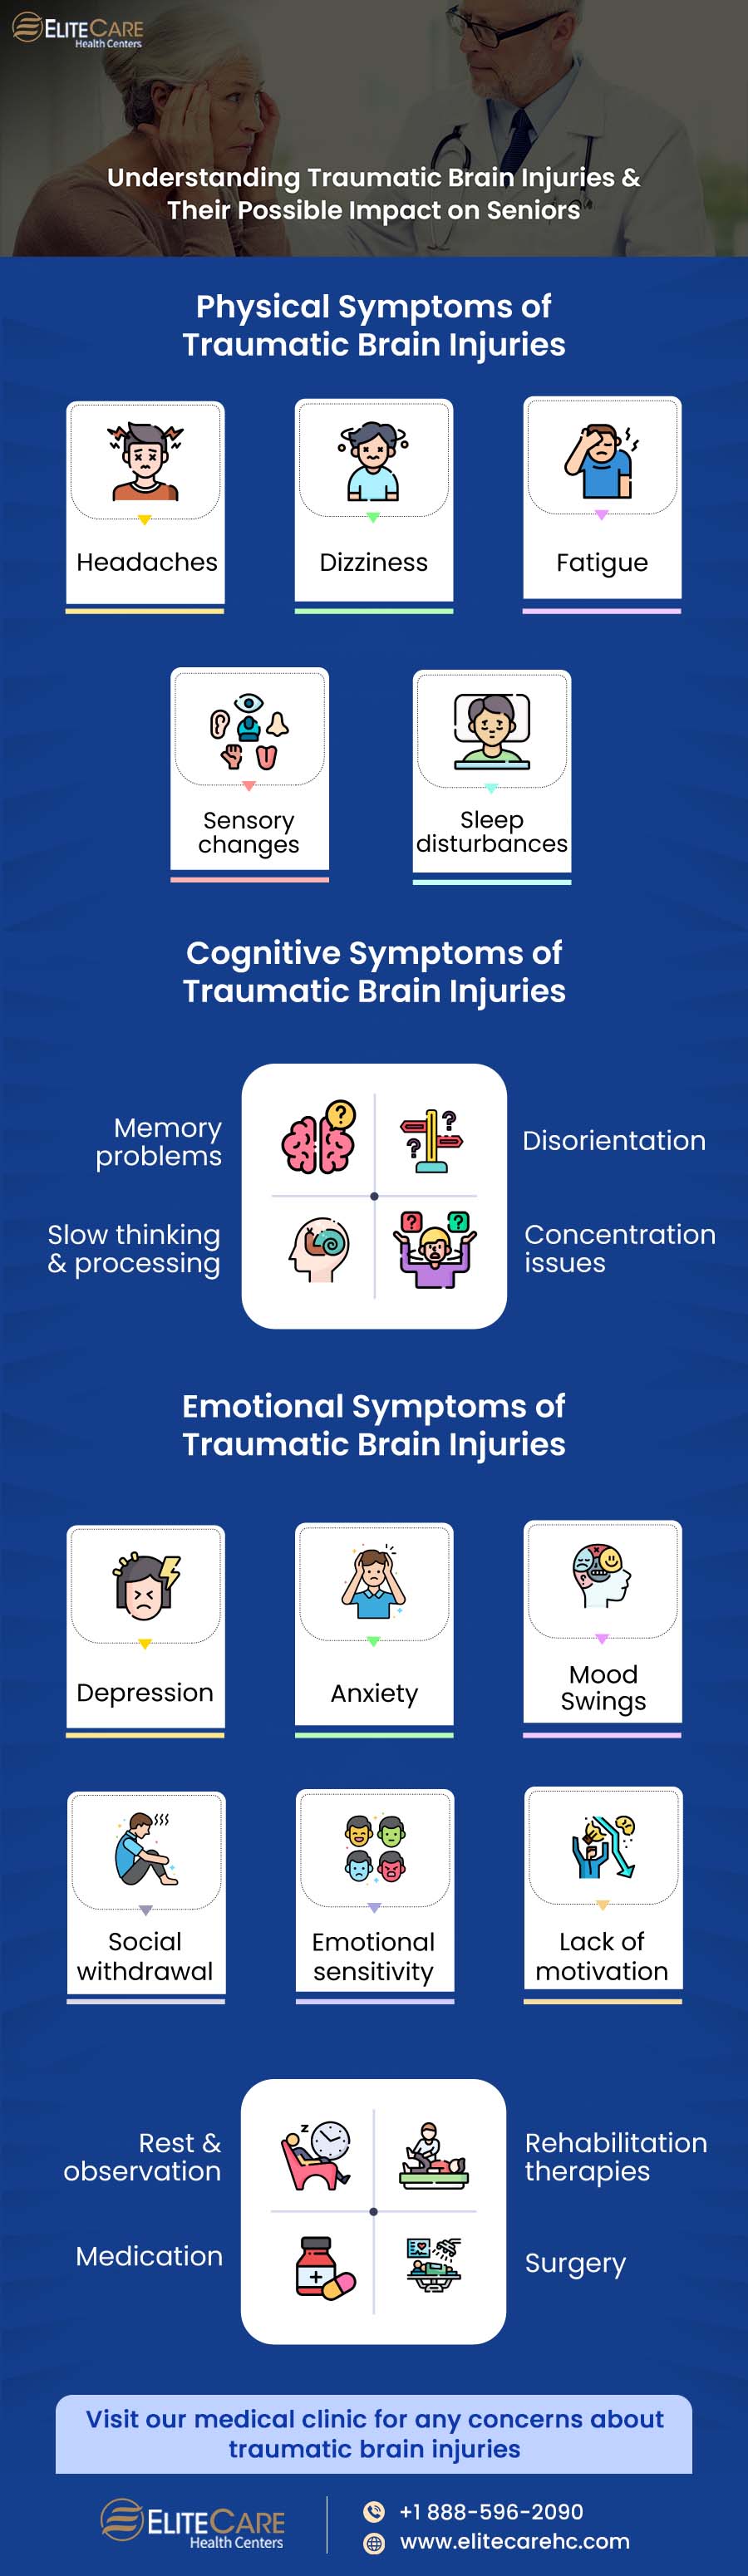 Traumatic-brain-injury-infographic